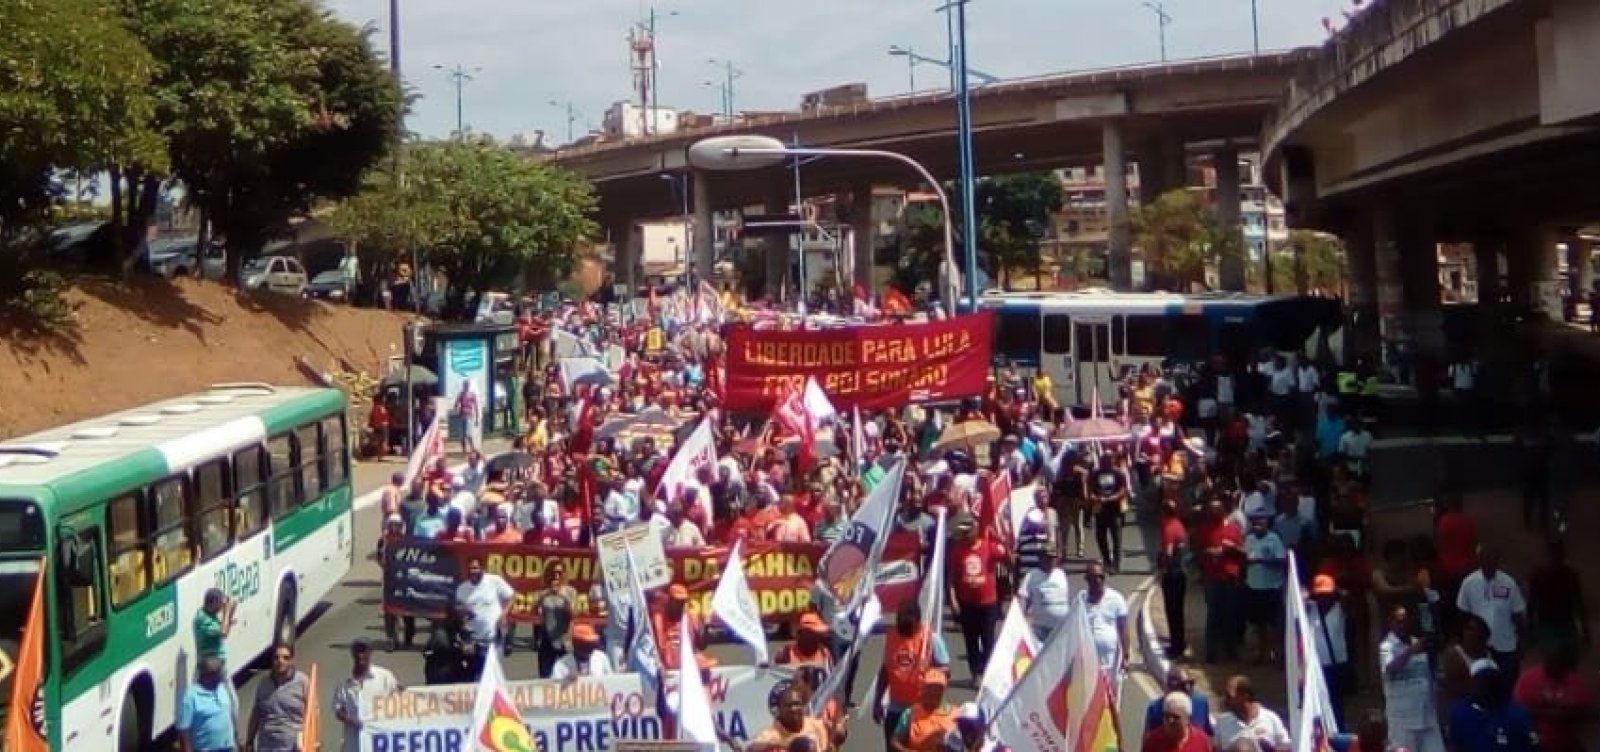 Manifestantes fazem caminhada contra Reforma da Previdência em Salvador